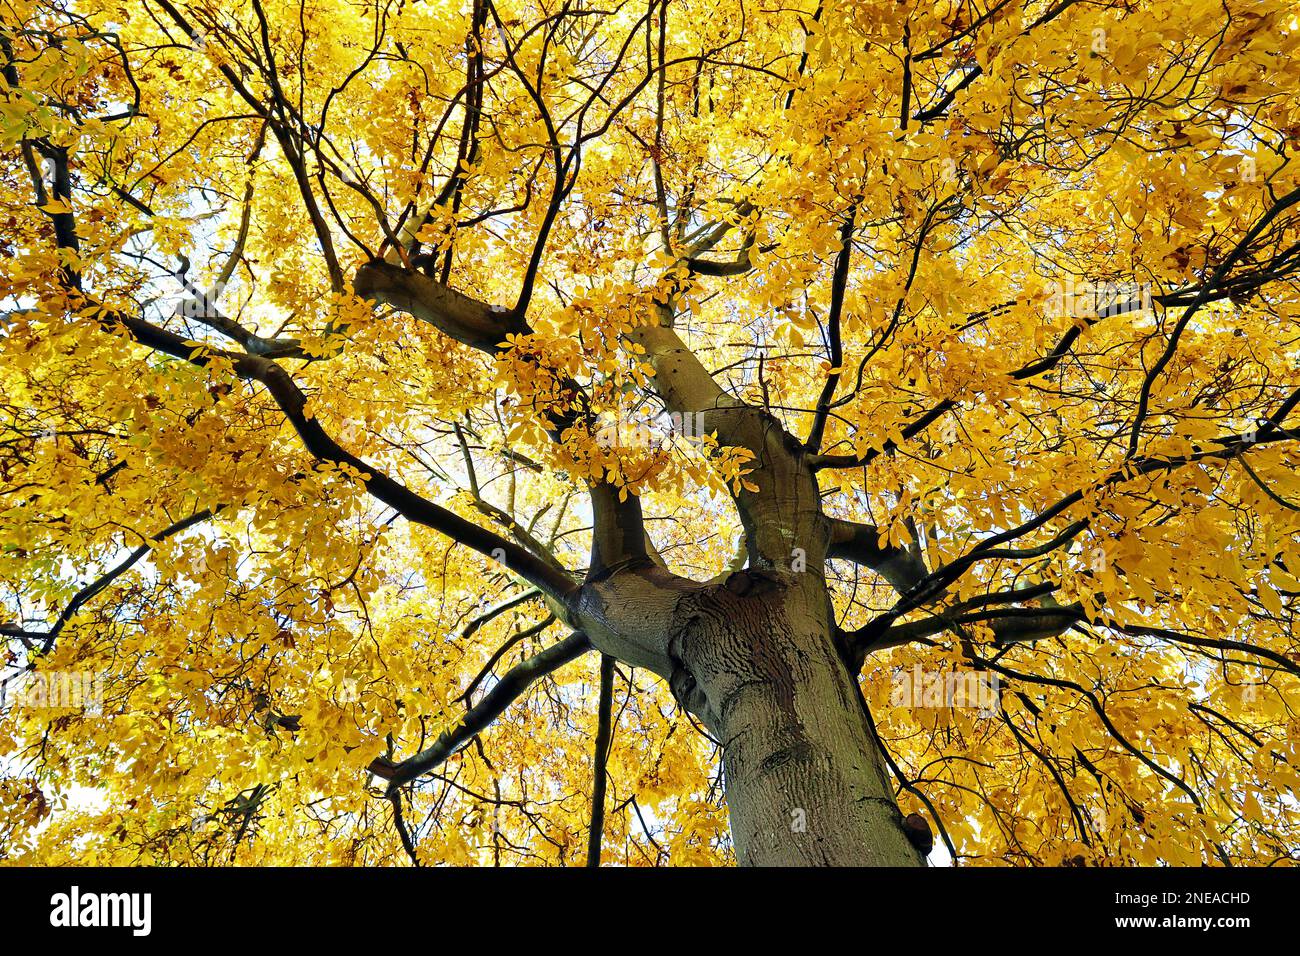 Pignut Hickory Tree (Carya glabra) nel mese di ottobre, guardando fino al baldacchino delle gloriose foglie dorate nel luminoso giorno d'autunno. Foto Stock